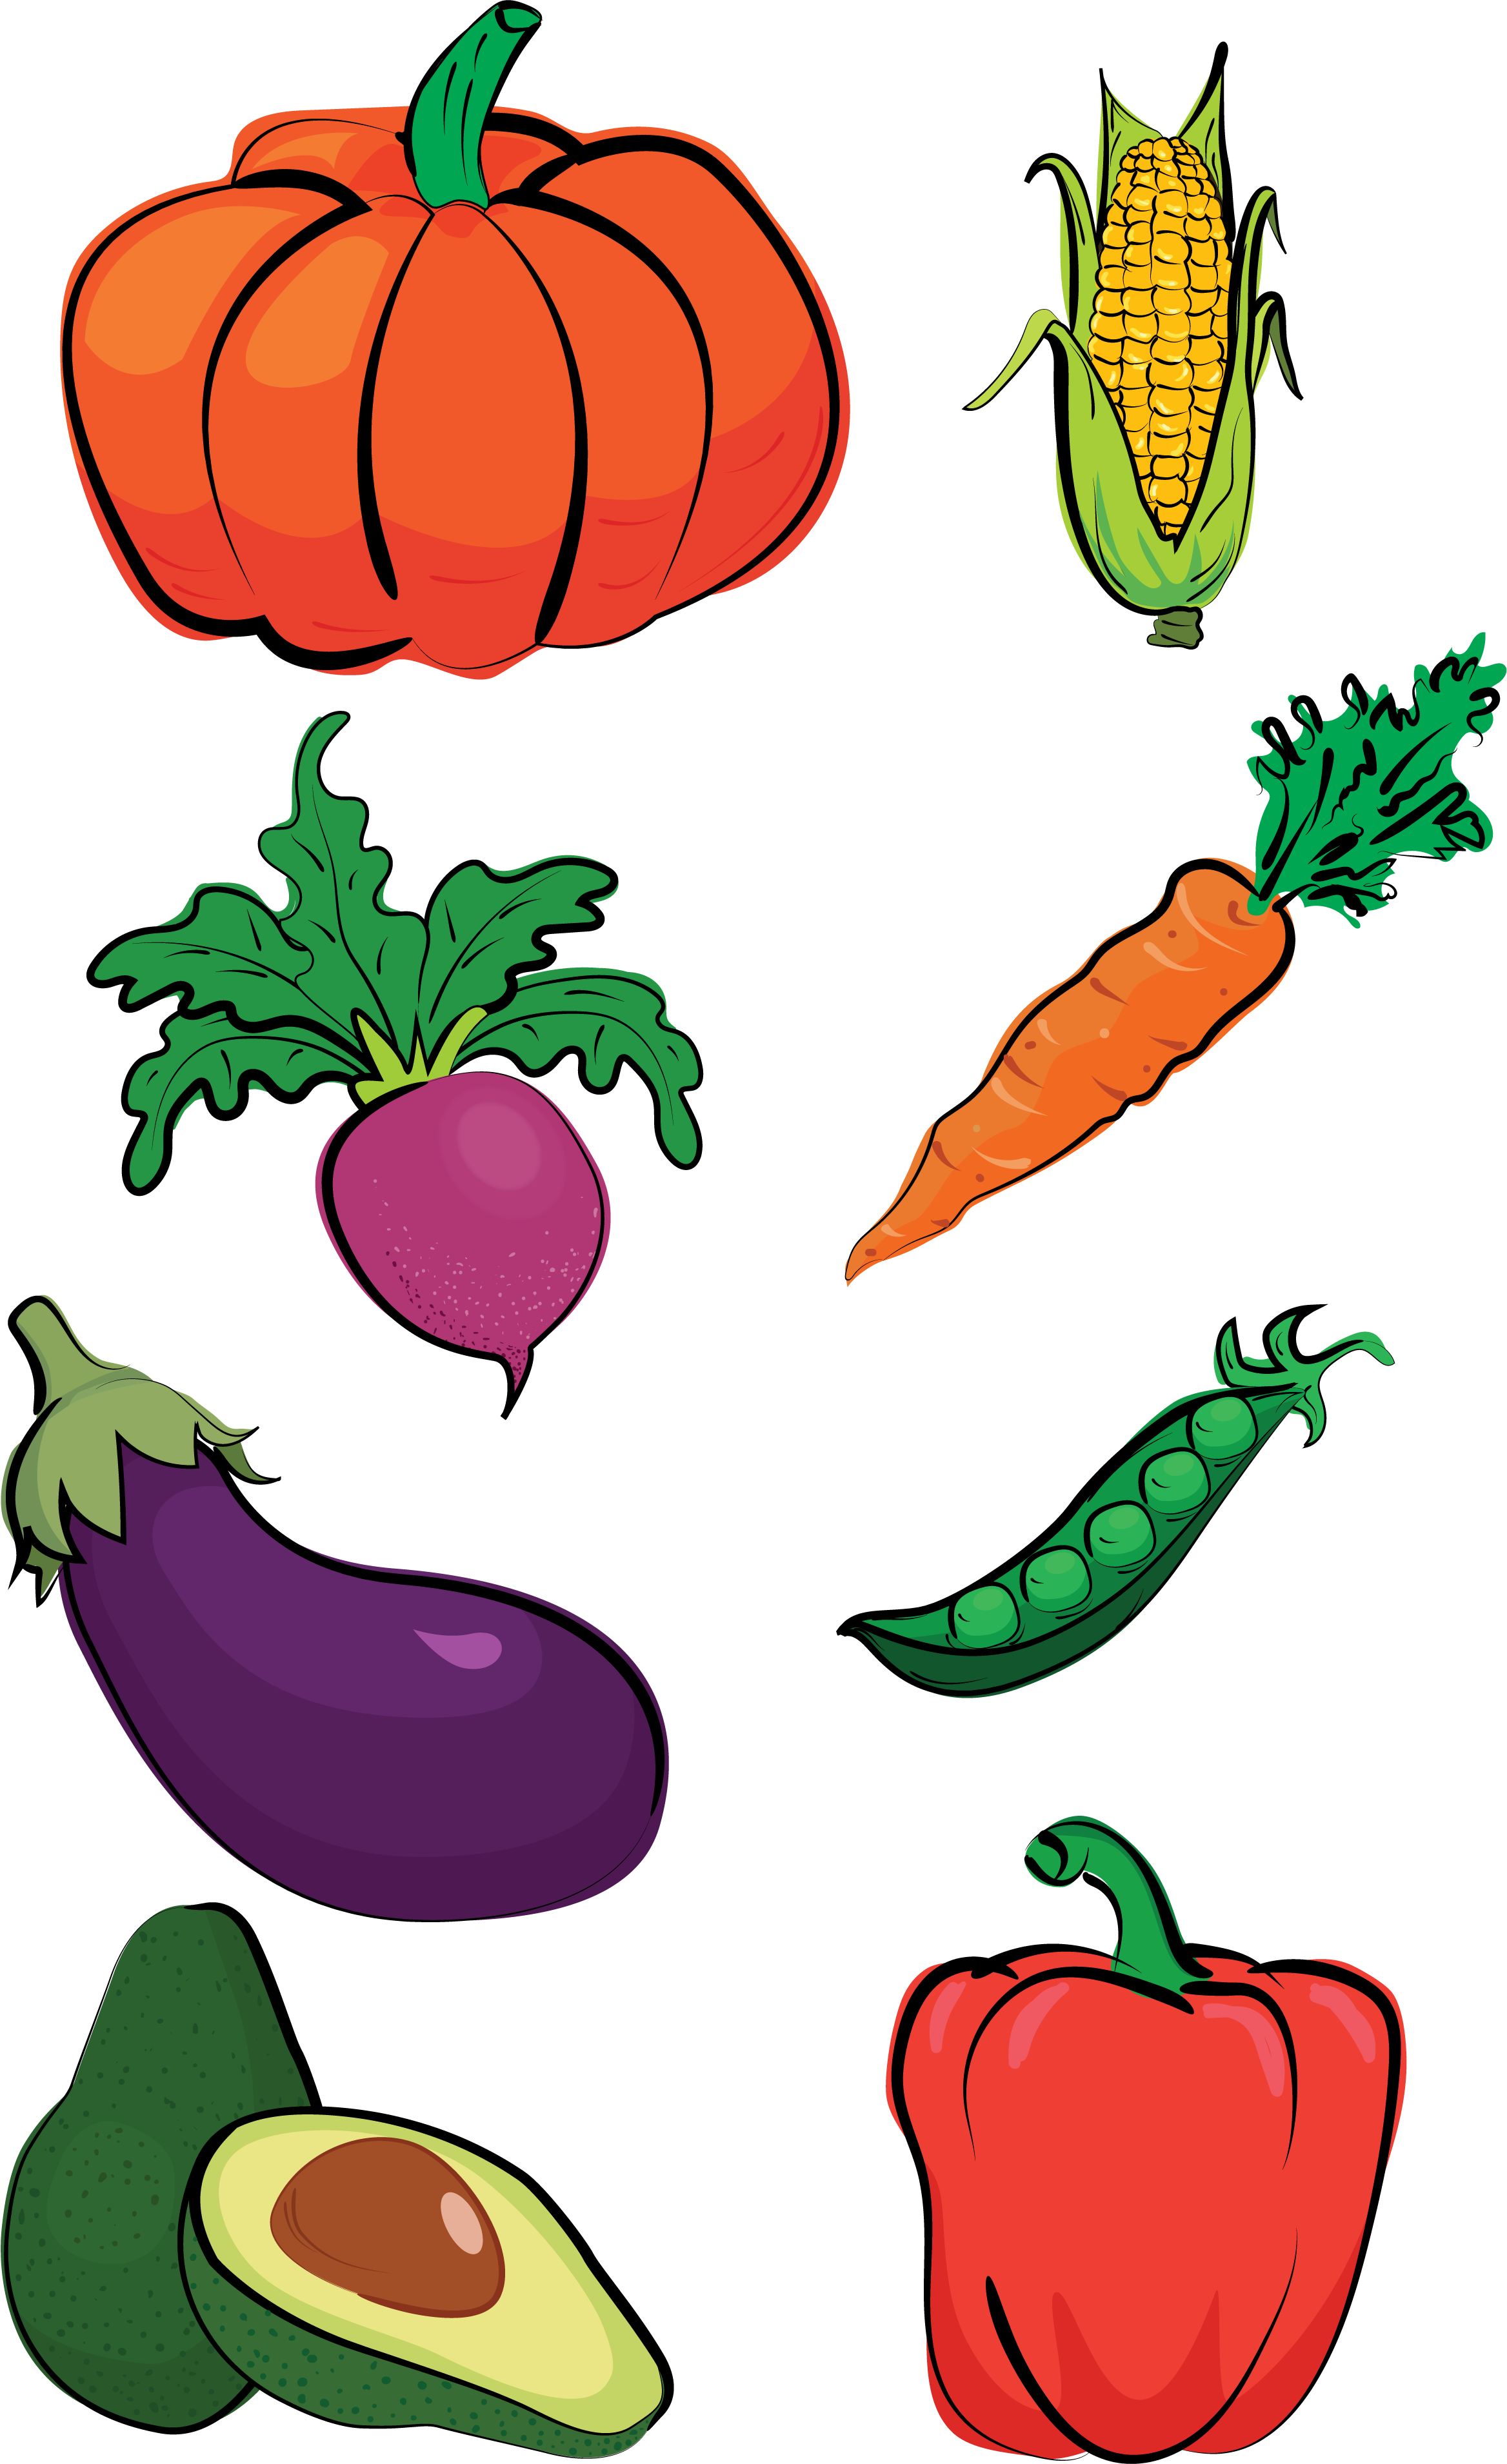 illustration of vegetables